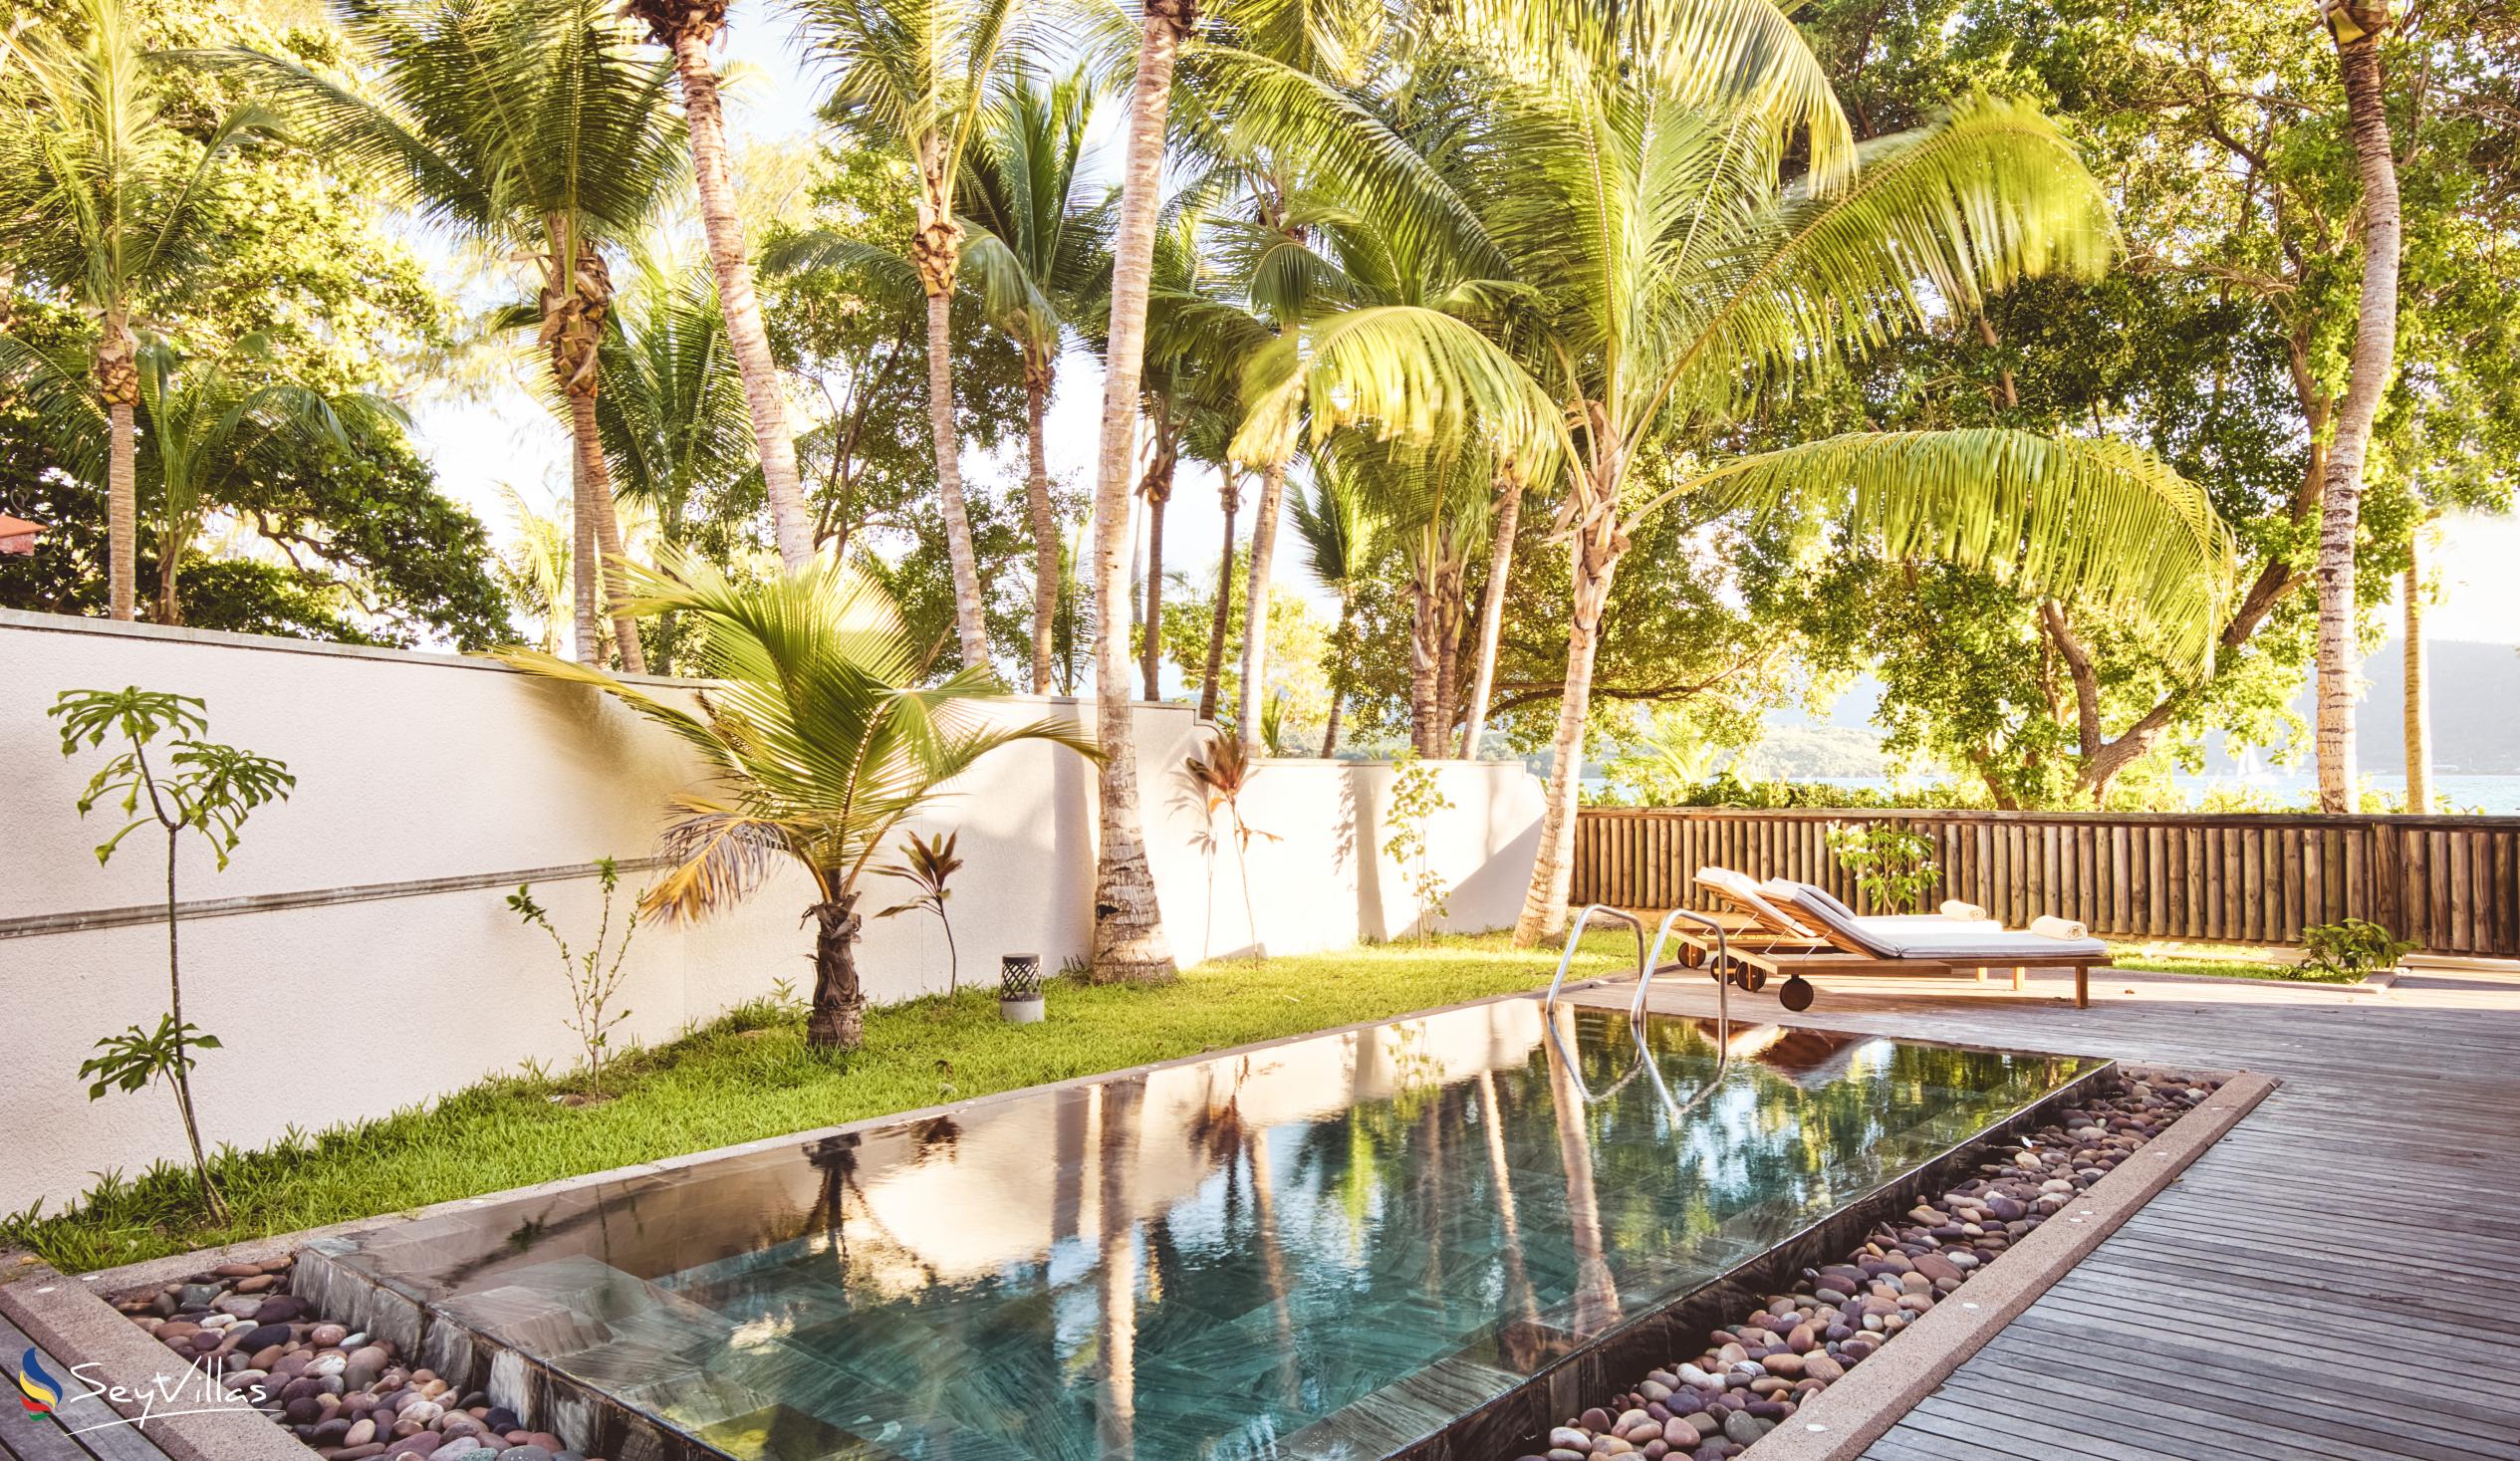 Foto 88: Club Med Seychelles - Suite Familiale avec piscine privée - Saint Anne (Seychelles)